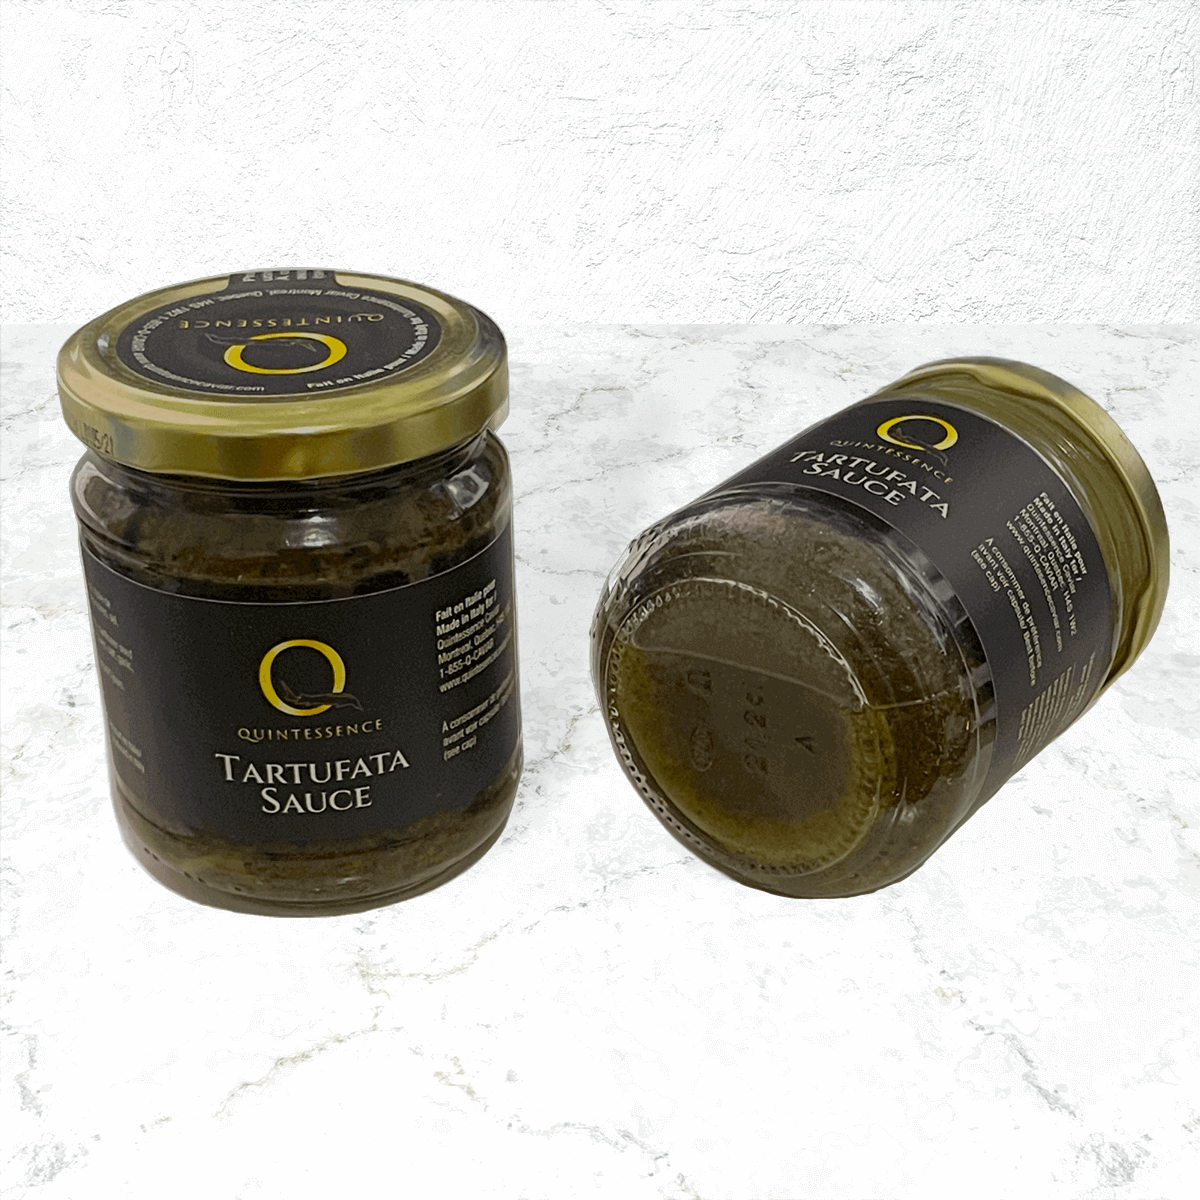 black-truffle-sauce-tartufata-1